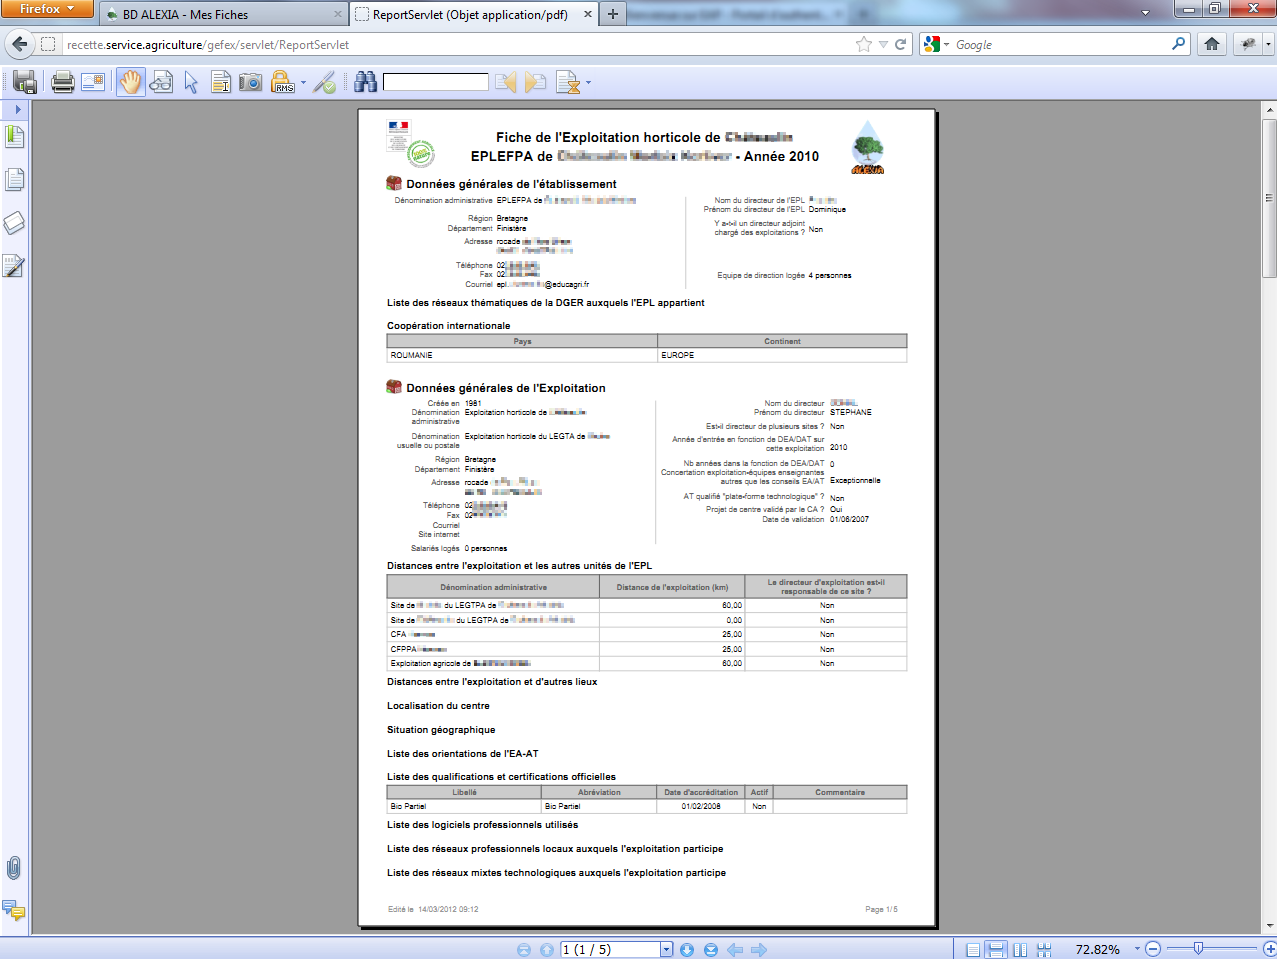 Exemple d'édition PDF de la fiche de l'Exploitation horticole de Châteaulin.